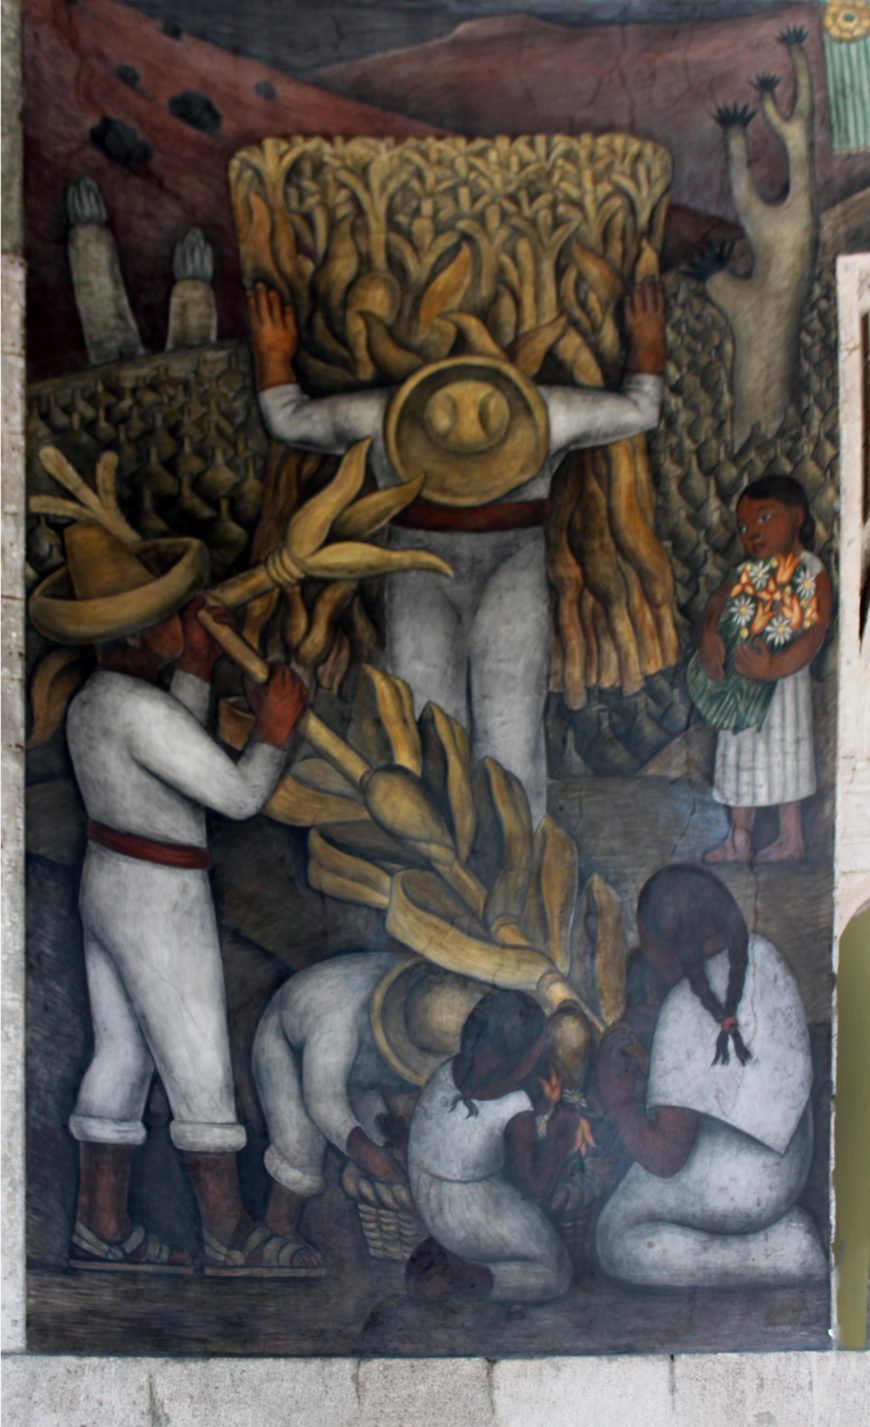 Diego Rivera, Fiesta del maíz, 1923–24, murals in the Secretaría de Educación Pública, Mexico City (photo: Megan Flattley)